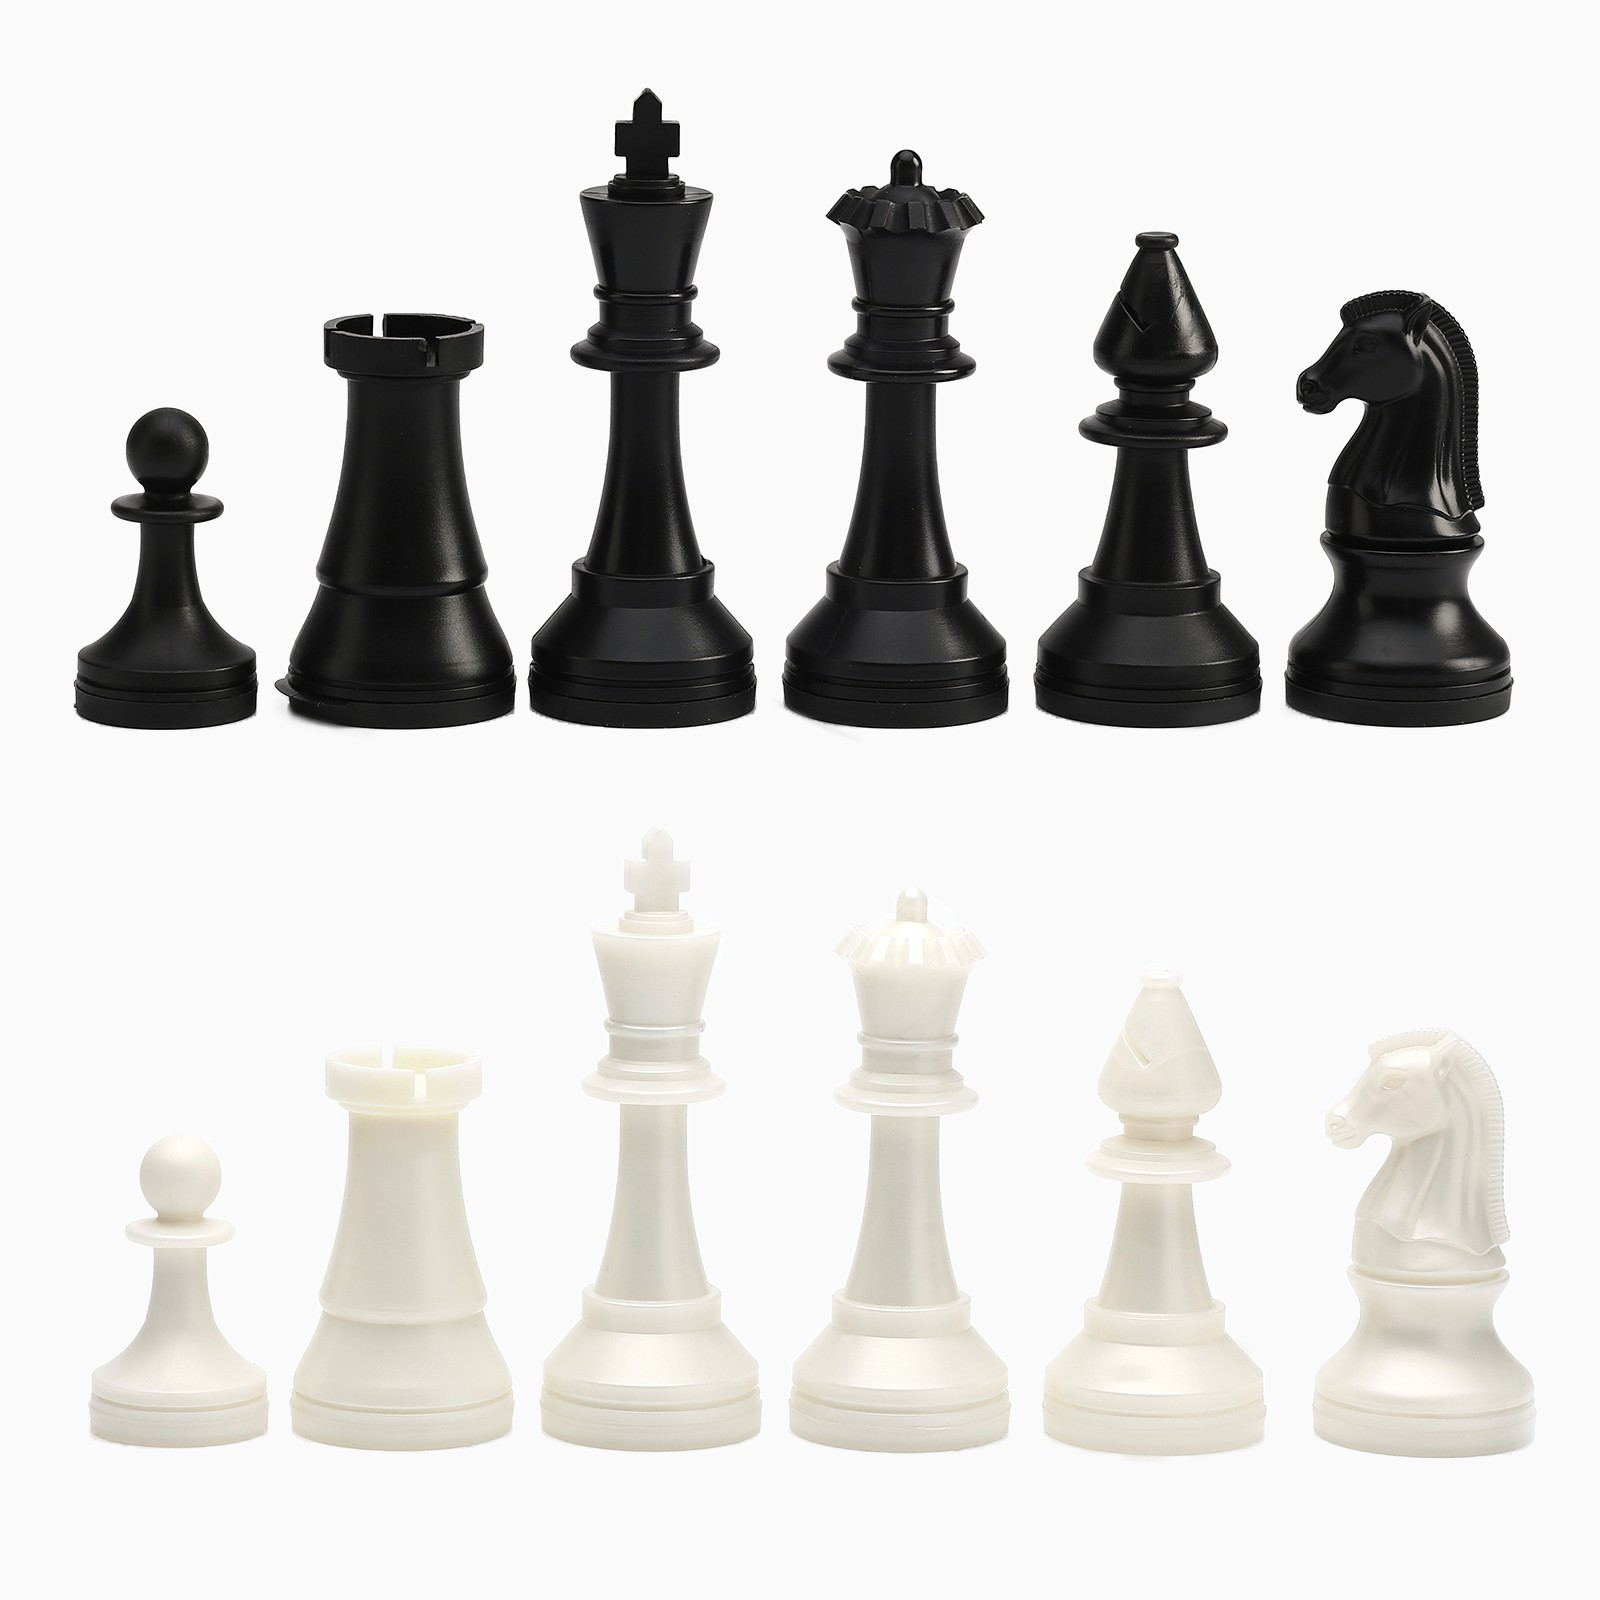 Шахматные фигуры Sima-Land турнирные пластик король h 10.5 см пешка h 5 см - фото 1